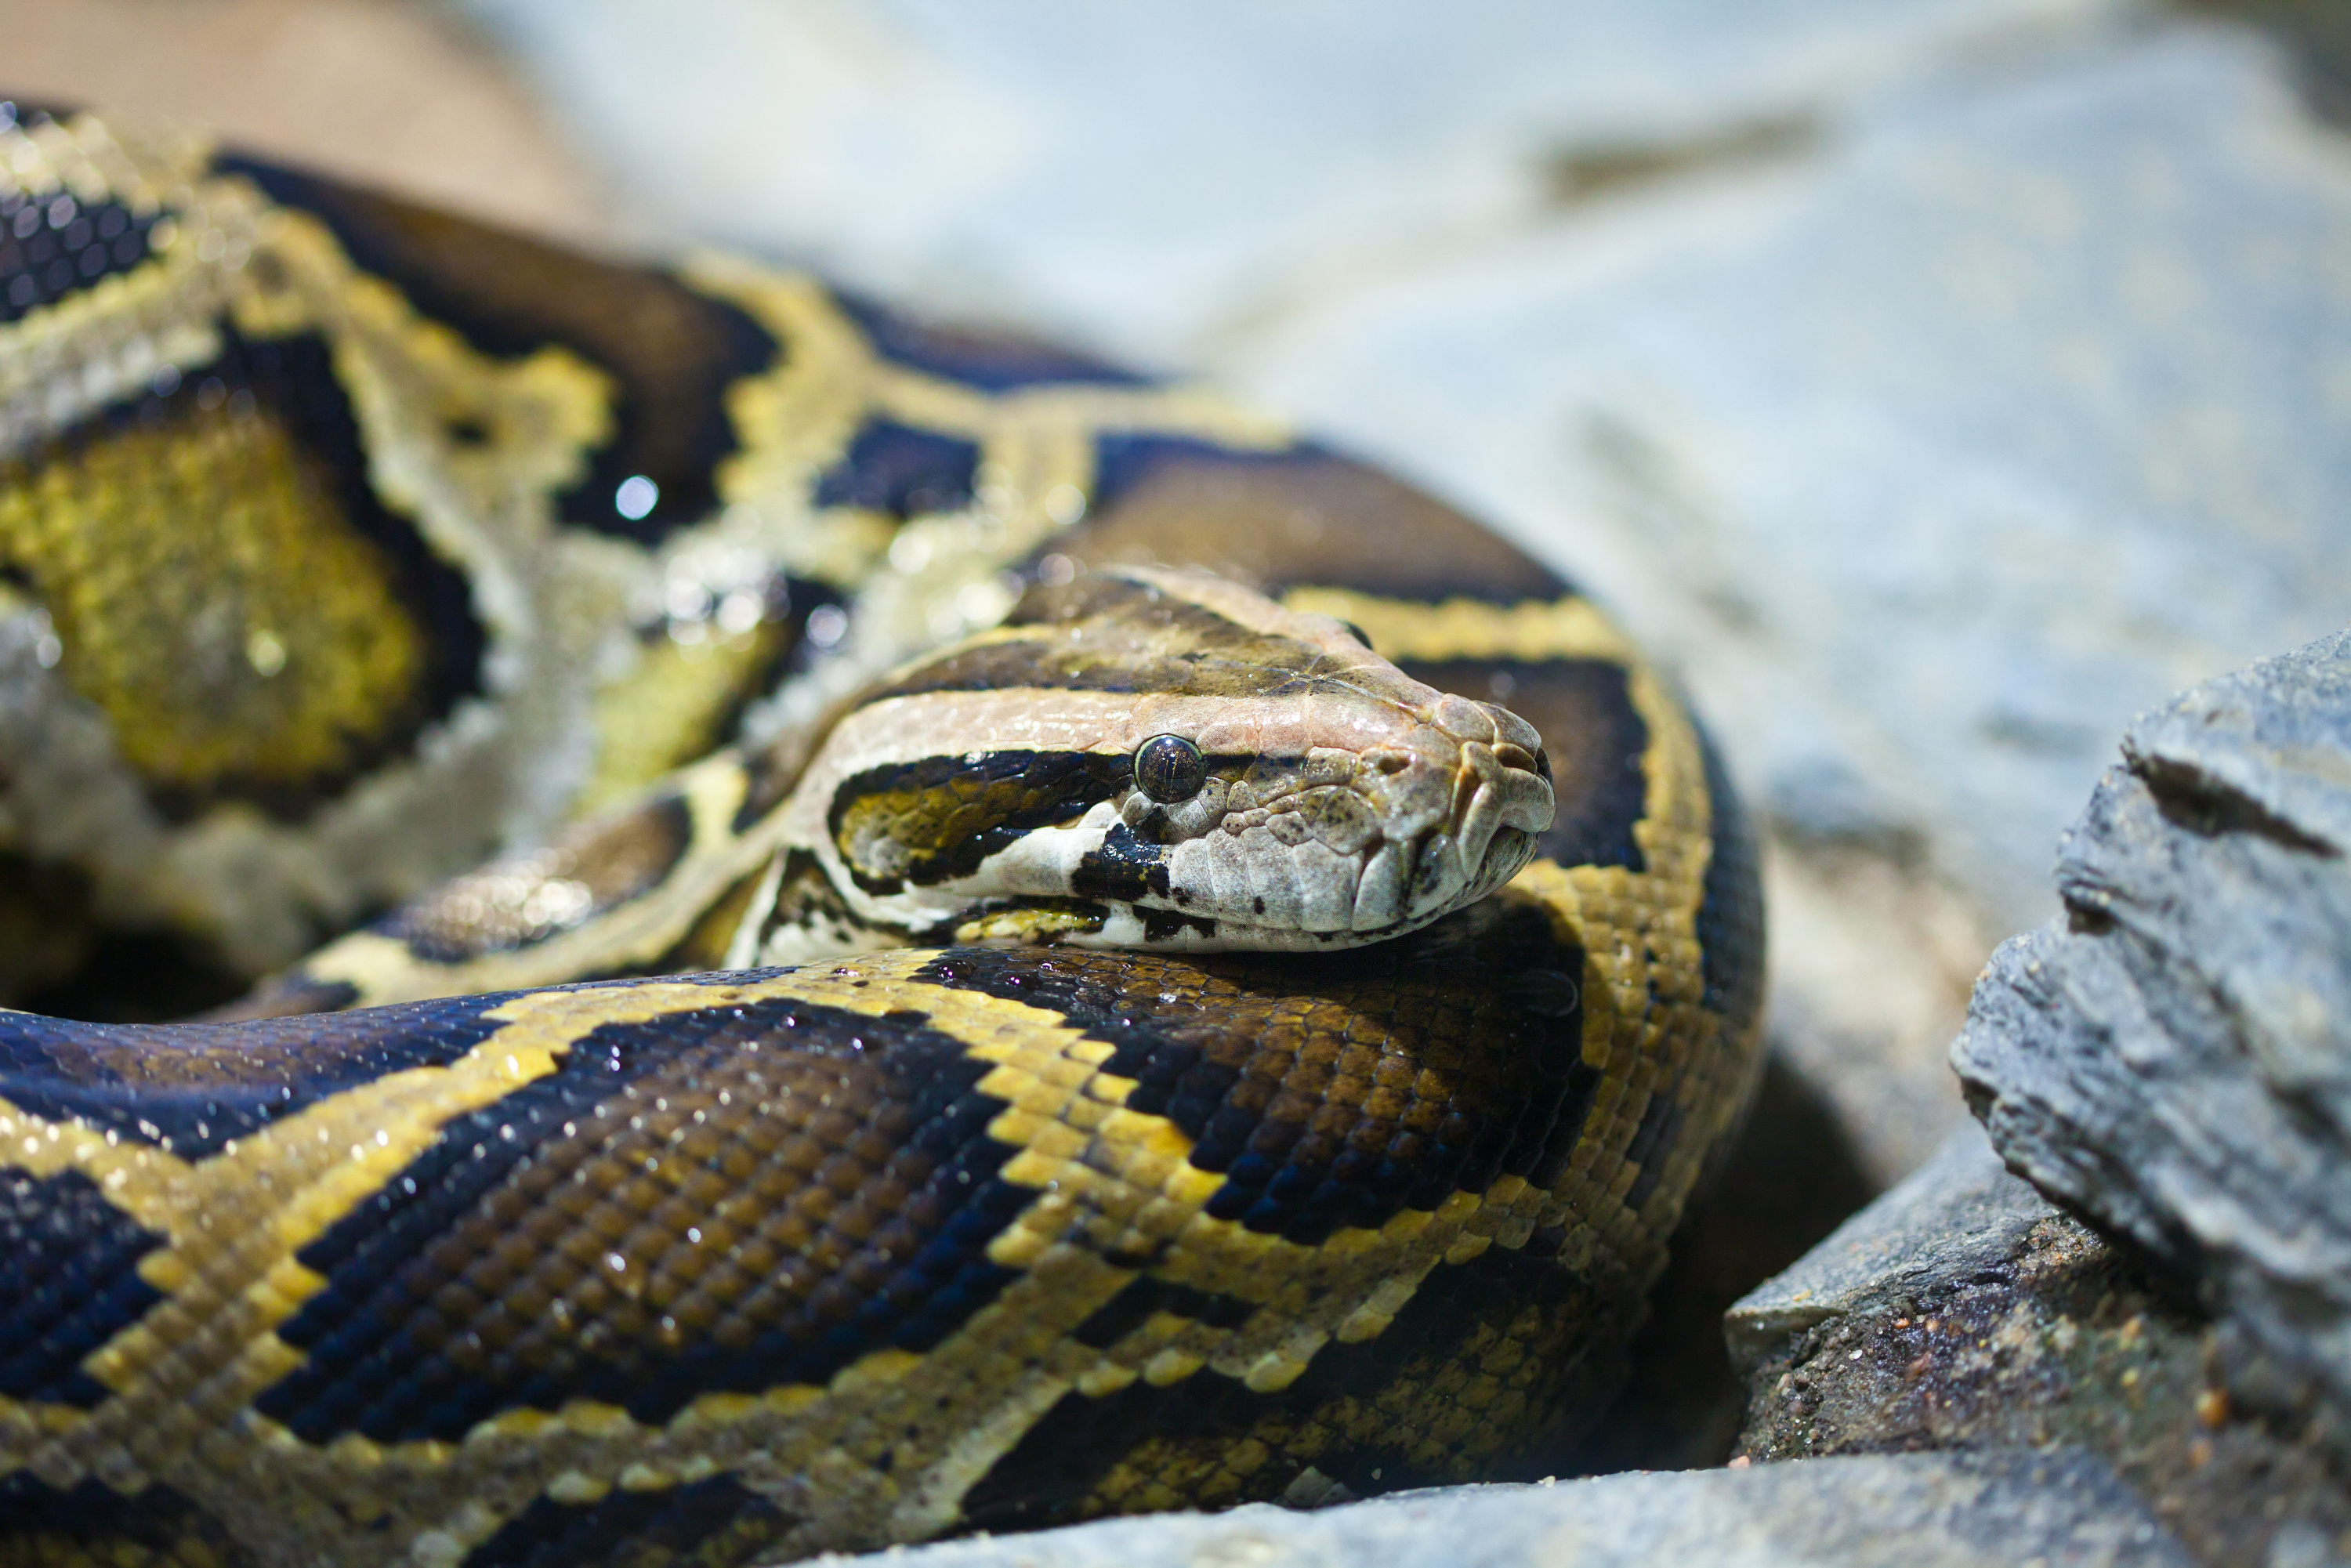 Sartrouville : découverte d’un python dans une aire de jeux pour enfants